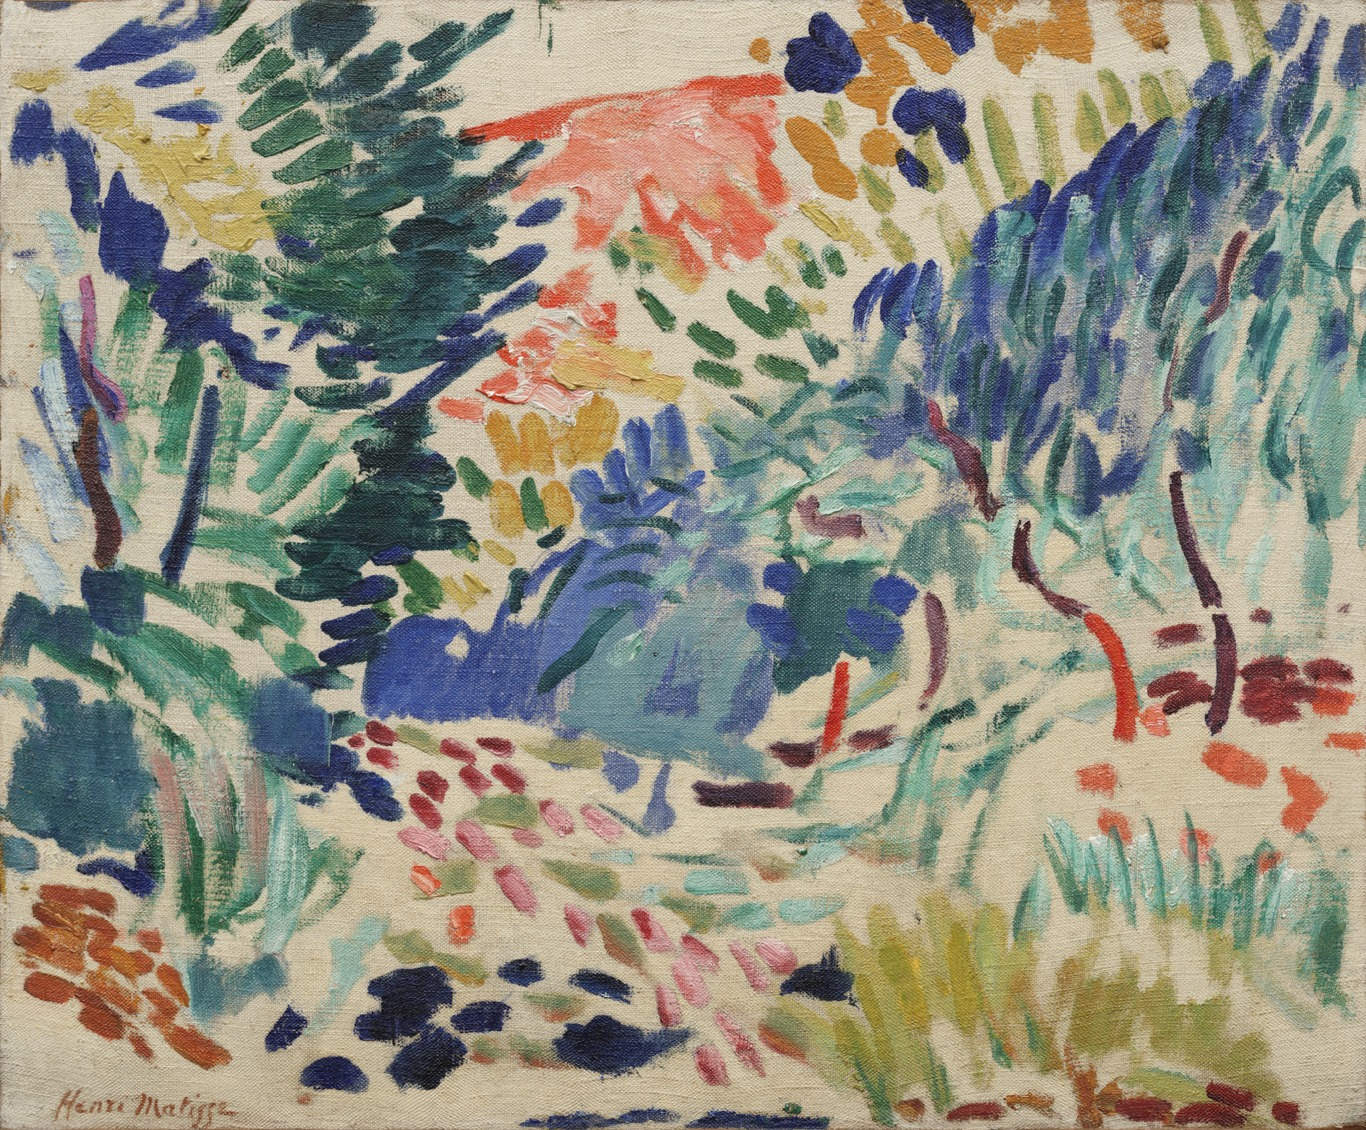 Landscape at Collioure (1905).